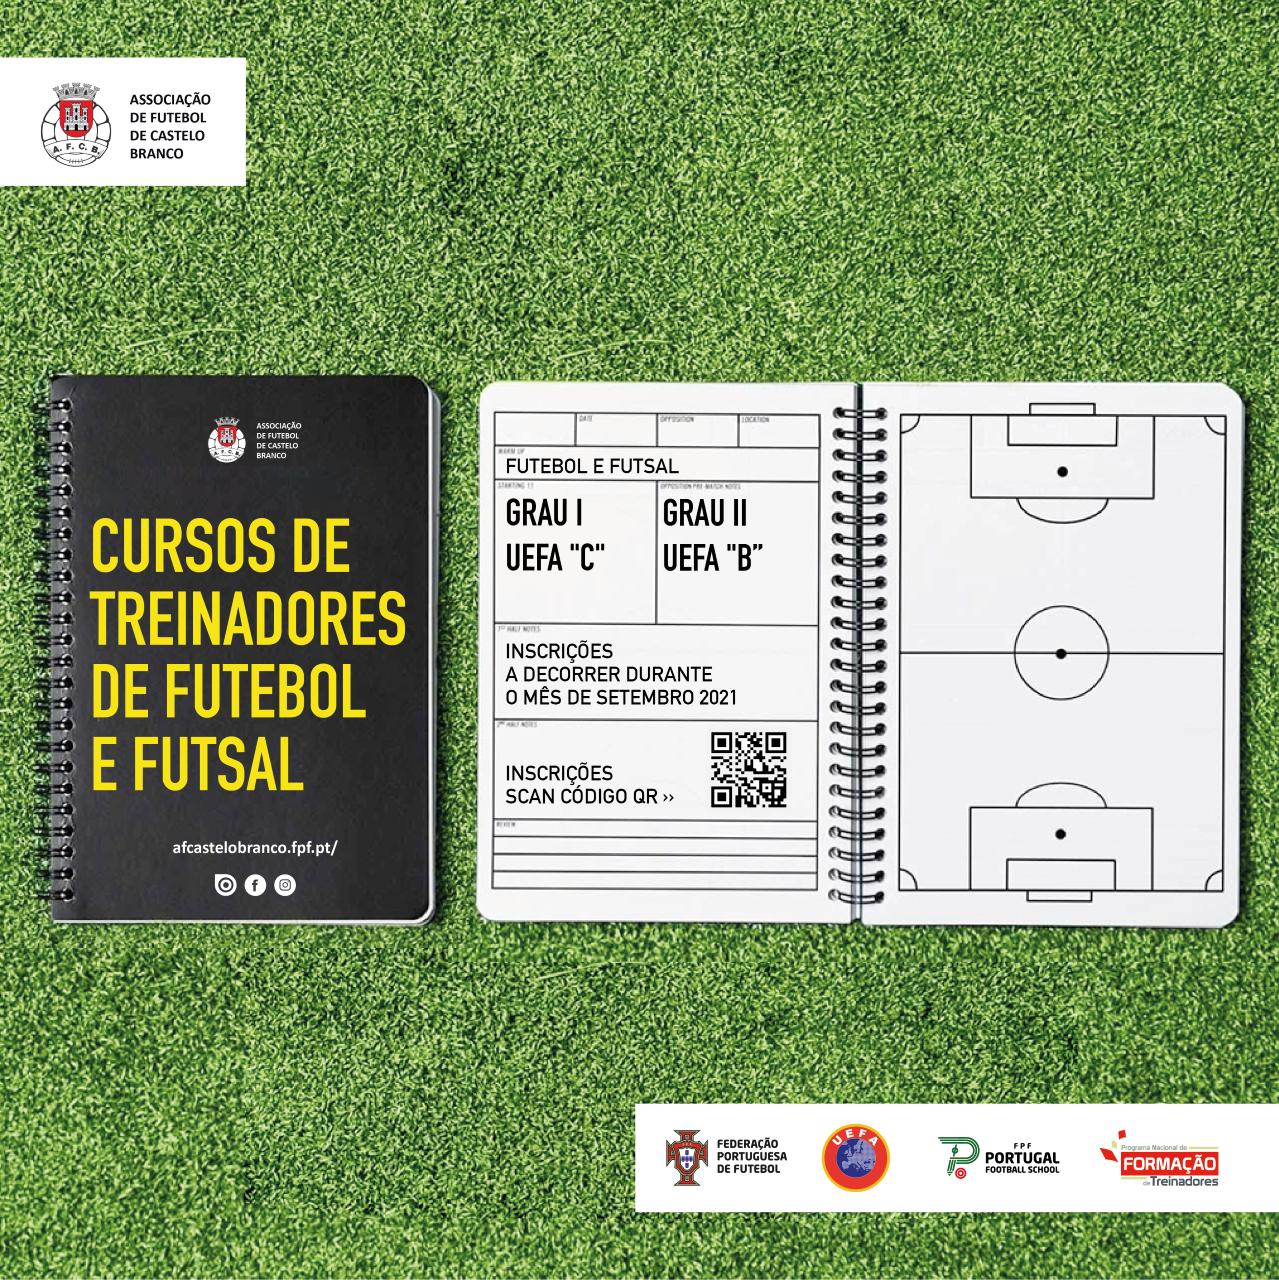 Abertas as pré-inscrições para os cursos de treinadores de futebol e futsal